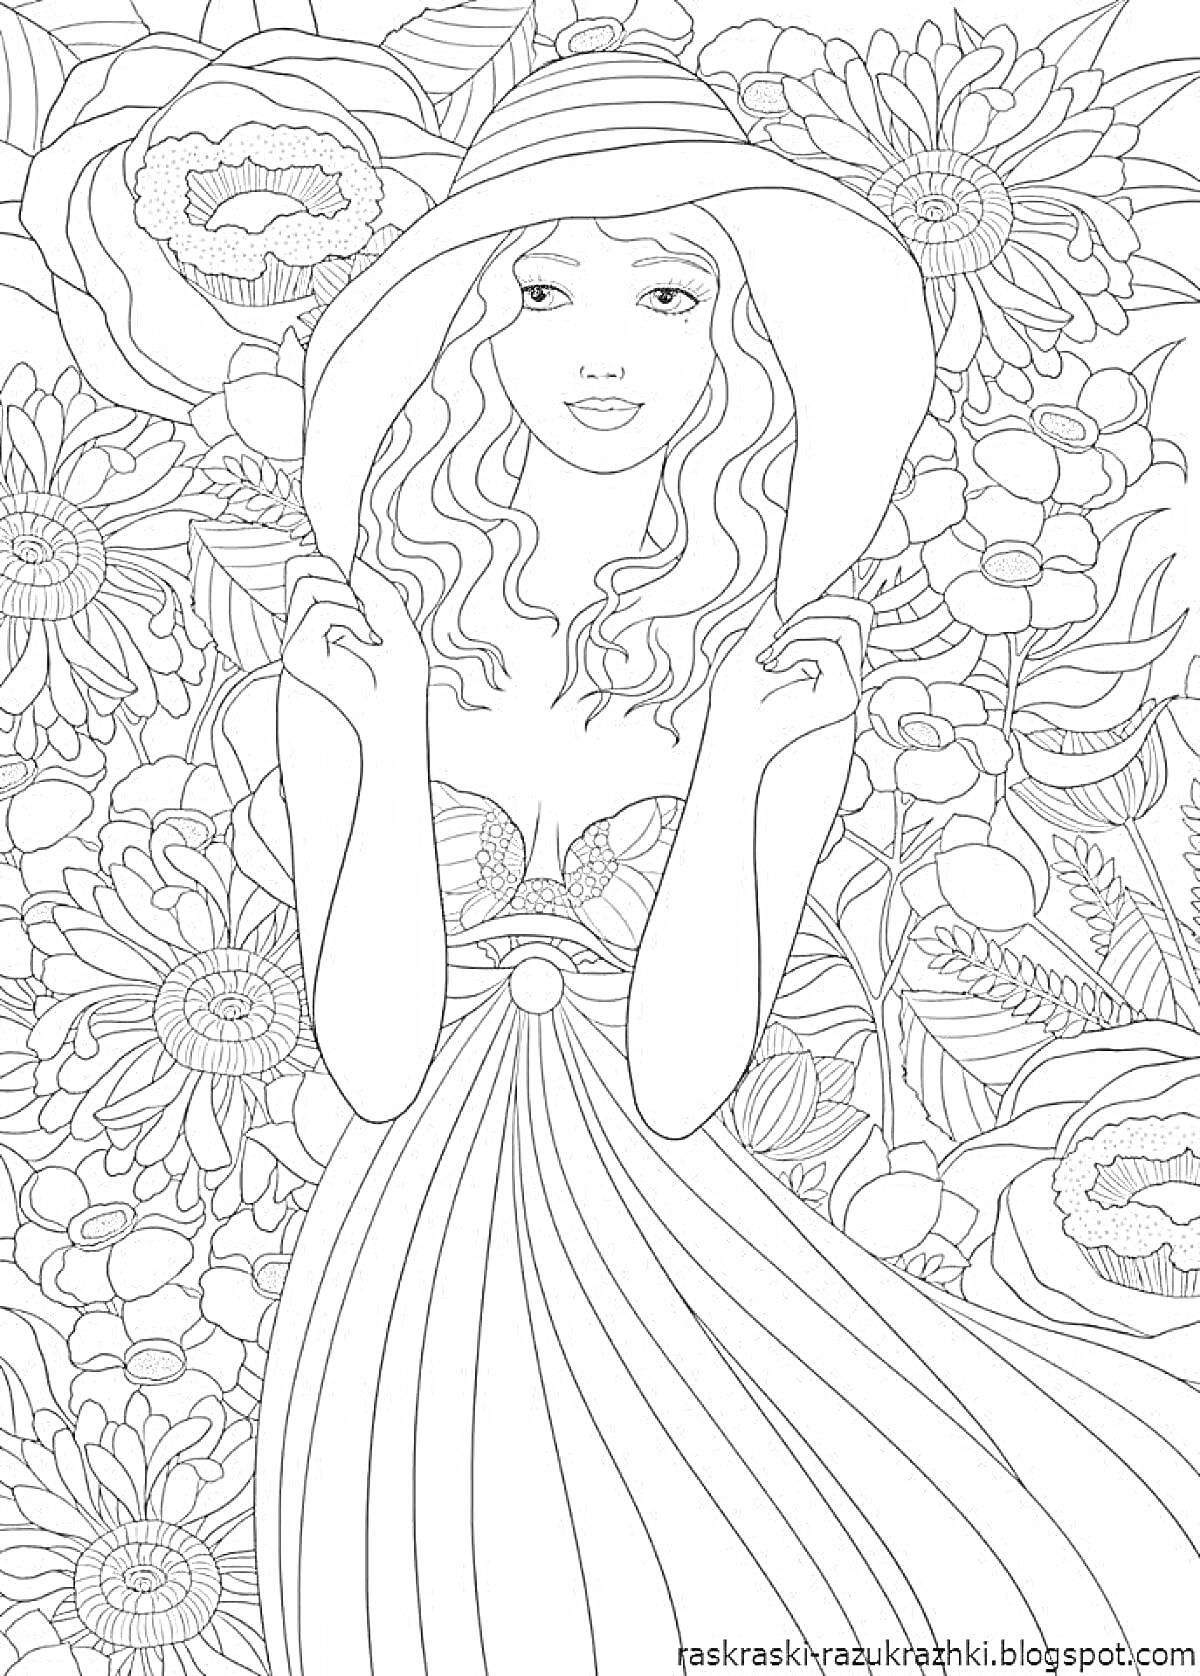 Раскраска Девушка в шляпе и платье на фоне цветочного поля